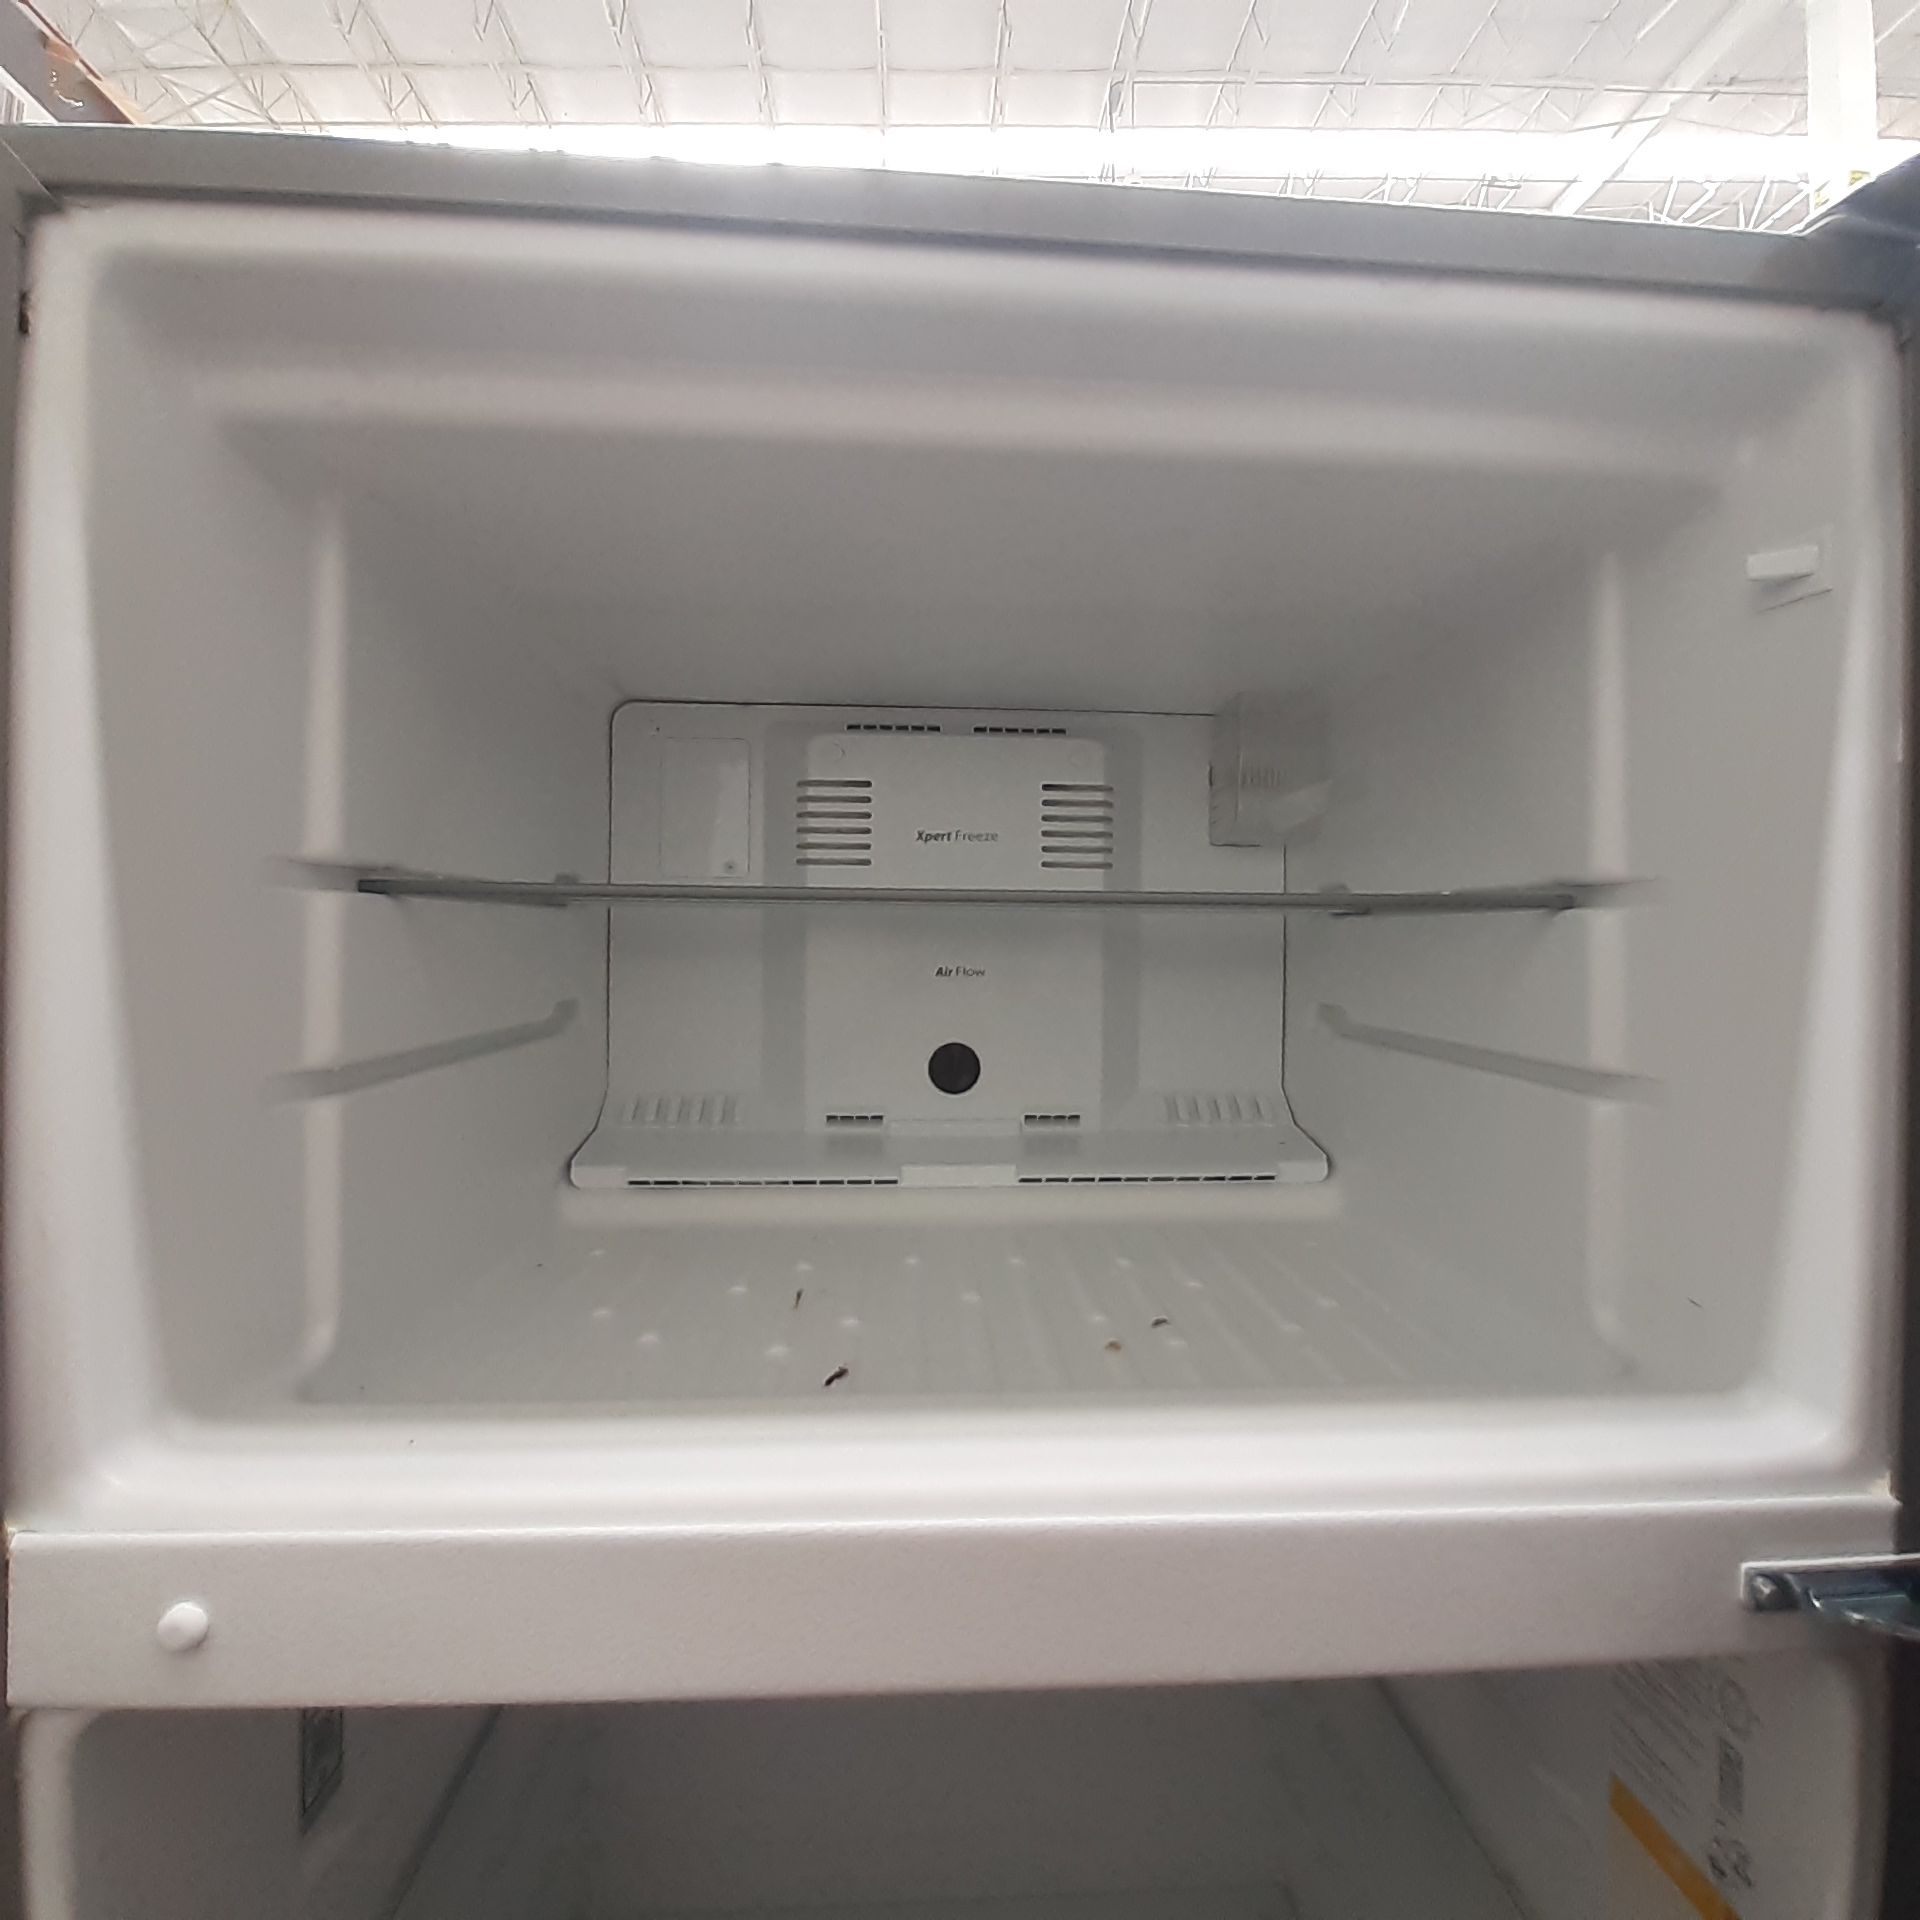 Lote De 2 Refrigeradores: 1 Refrigerador Marca Whirlpool, 1 Refrigerador Marca Mabe, Distintos Model - Image 18 of 22